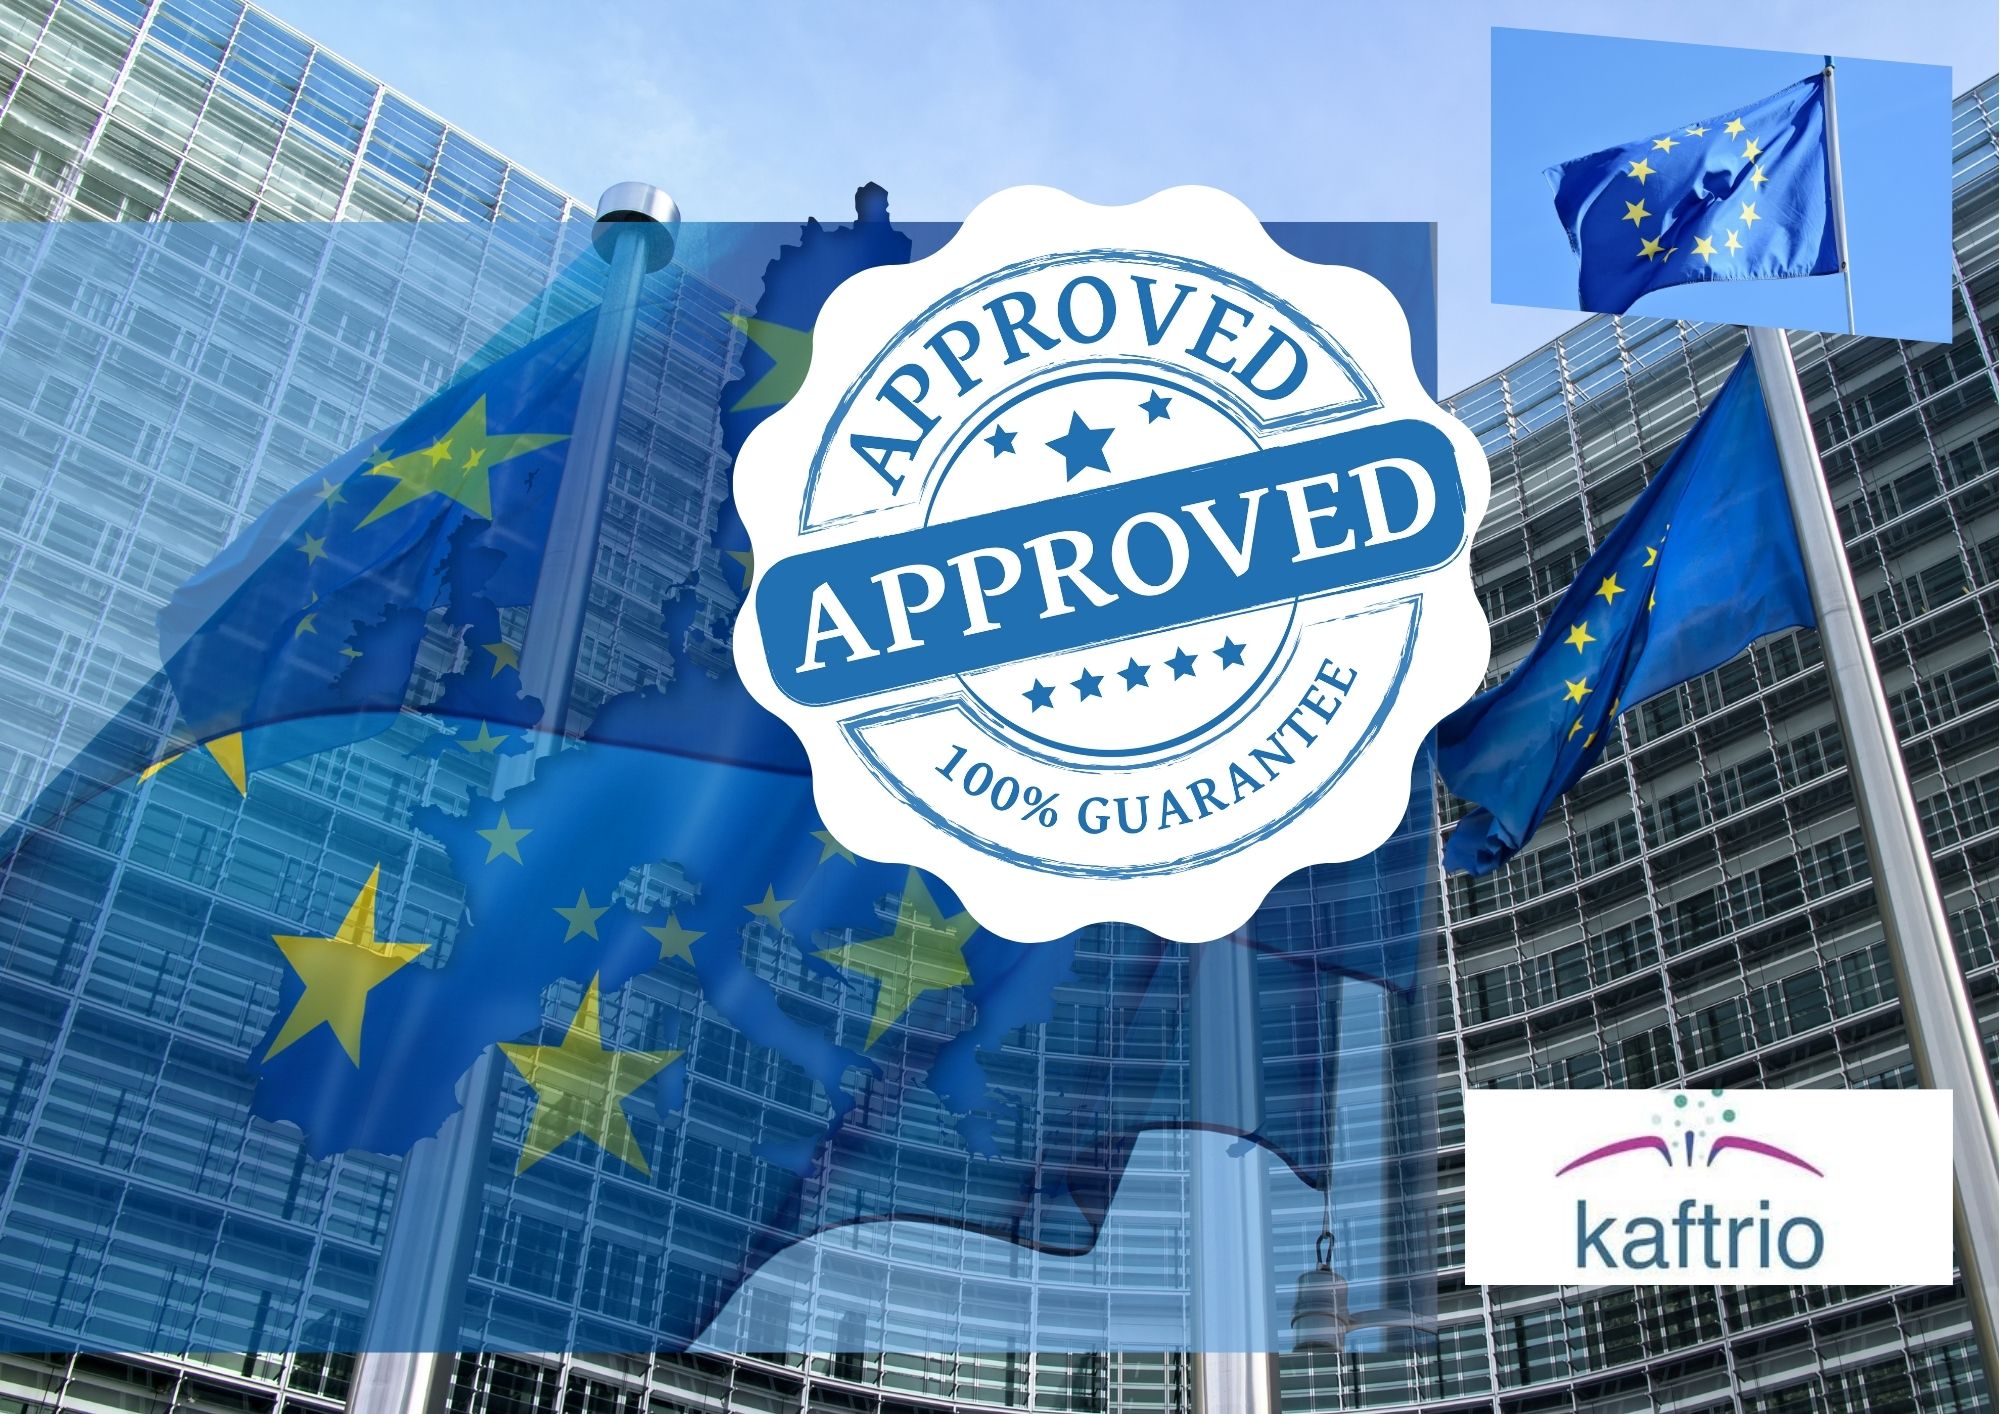 Se aprueba en Europa el medicamento KAFTRIO de Vertex para tratar la Fibrosis Quística